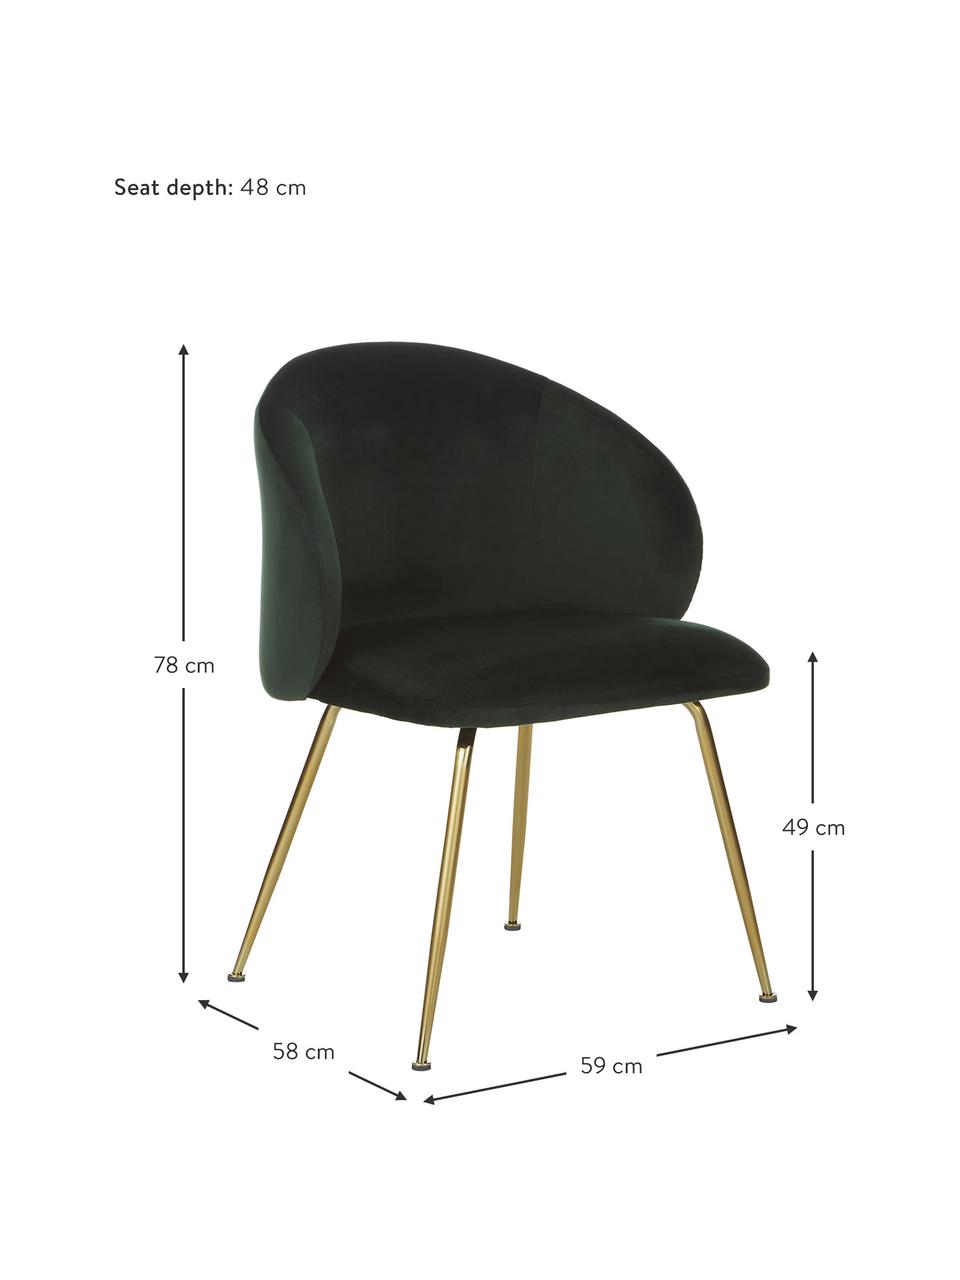 Fluwelen stoelen Luisa, 2 stuks, Bekleding: fluweel (100% polyester) , Poten: essenhout, FSC-gecertific, Fluweel donkergroen, goudkleurig, B 59 x D 58 cm